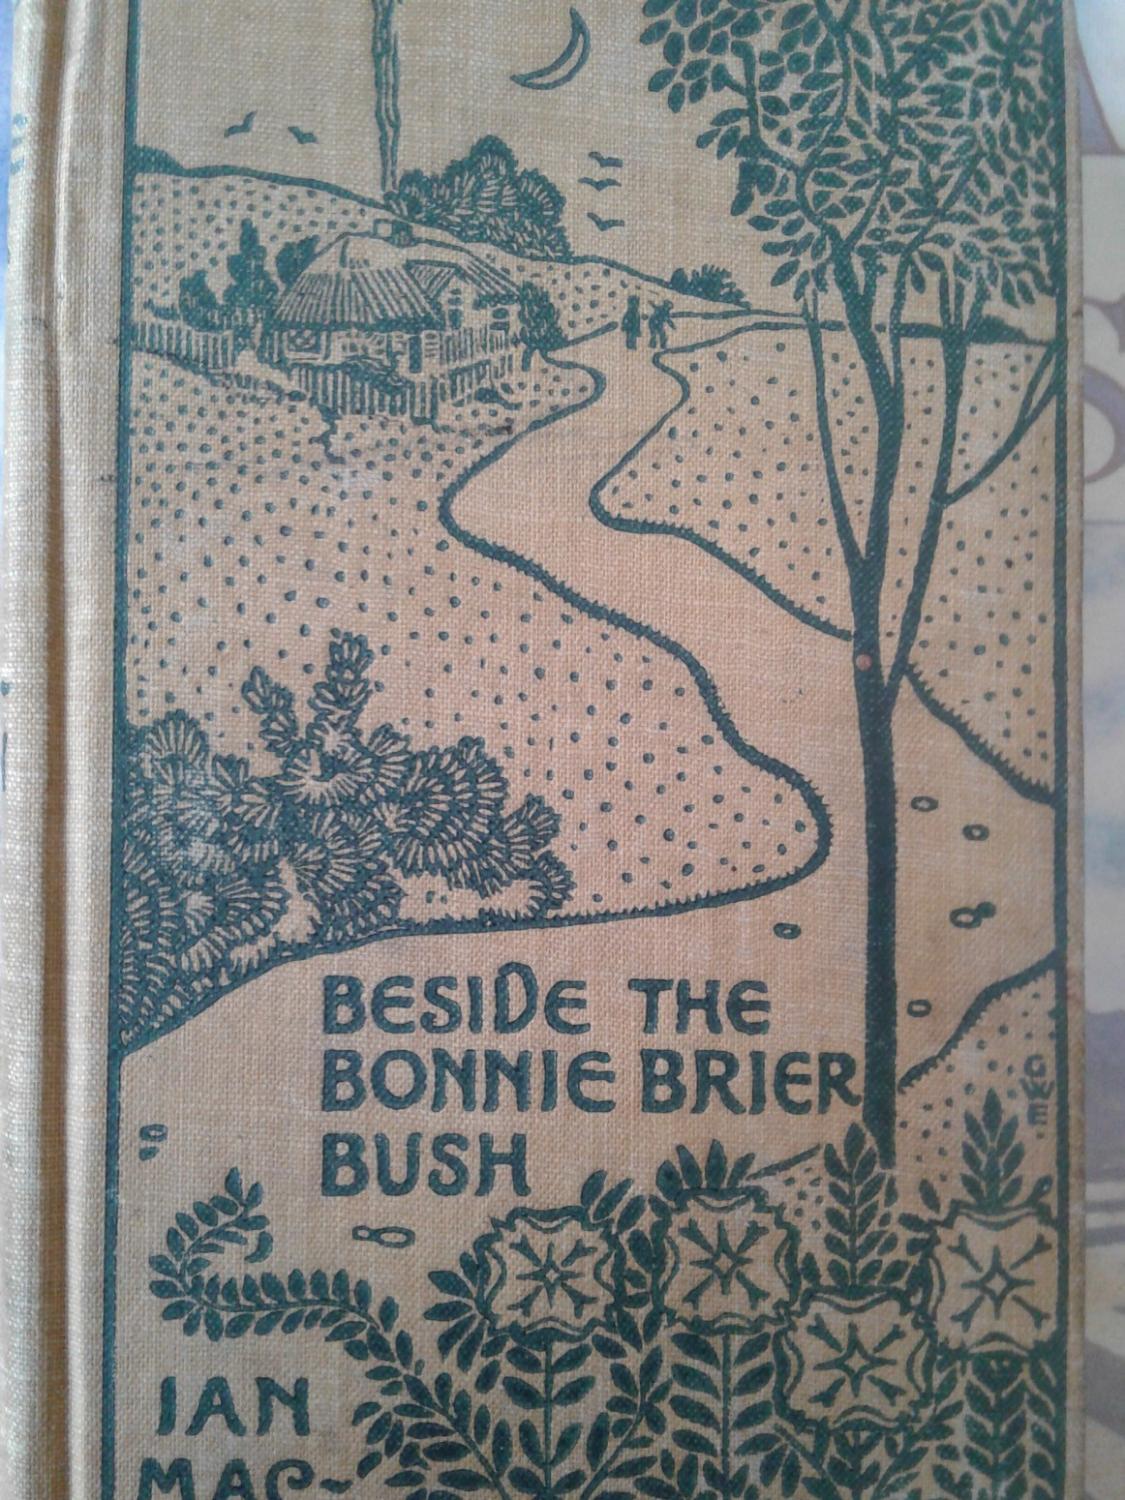 Beside the Bonnie Brier Bush book image